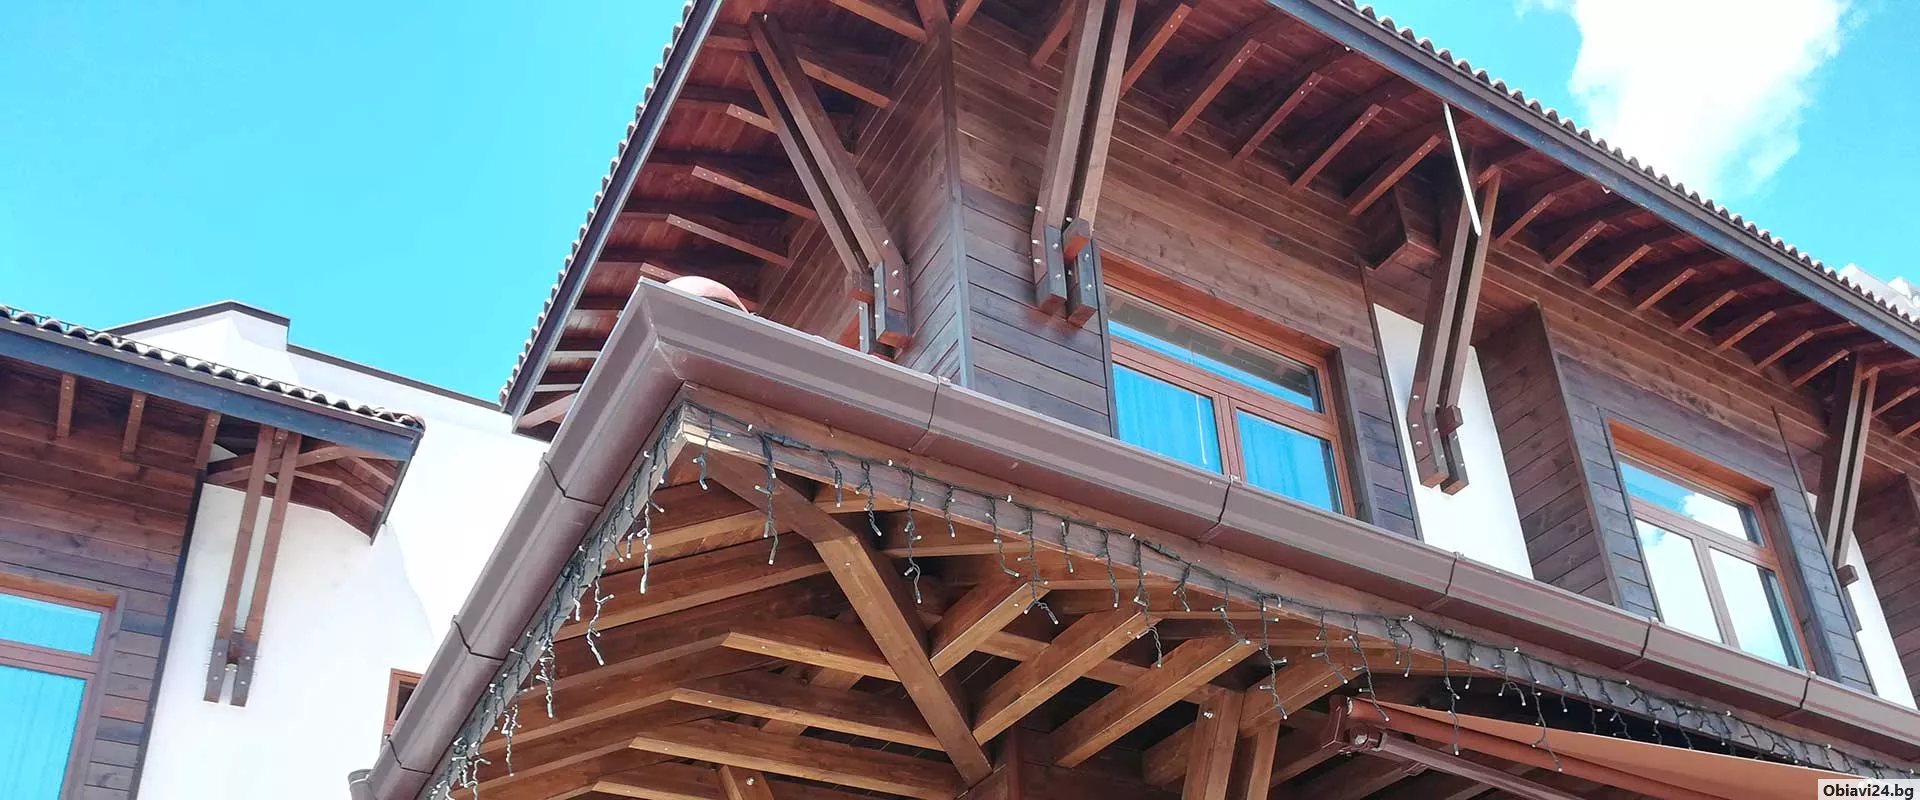 Изграждане и ремонт на покриви гаранция качество договор работим в цялата страна издаване на фактура - obiavi24.bg